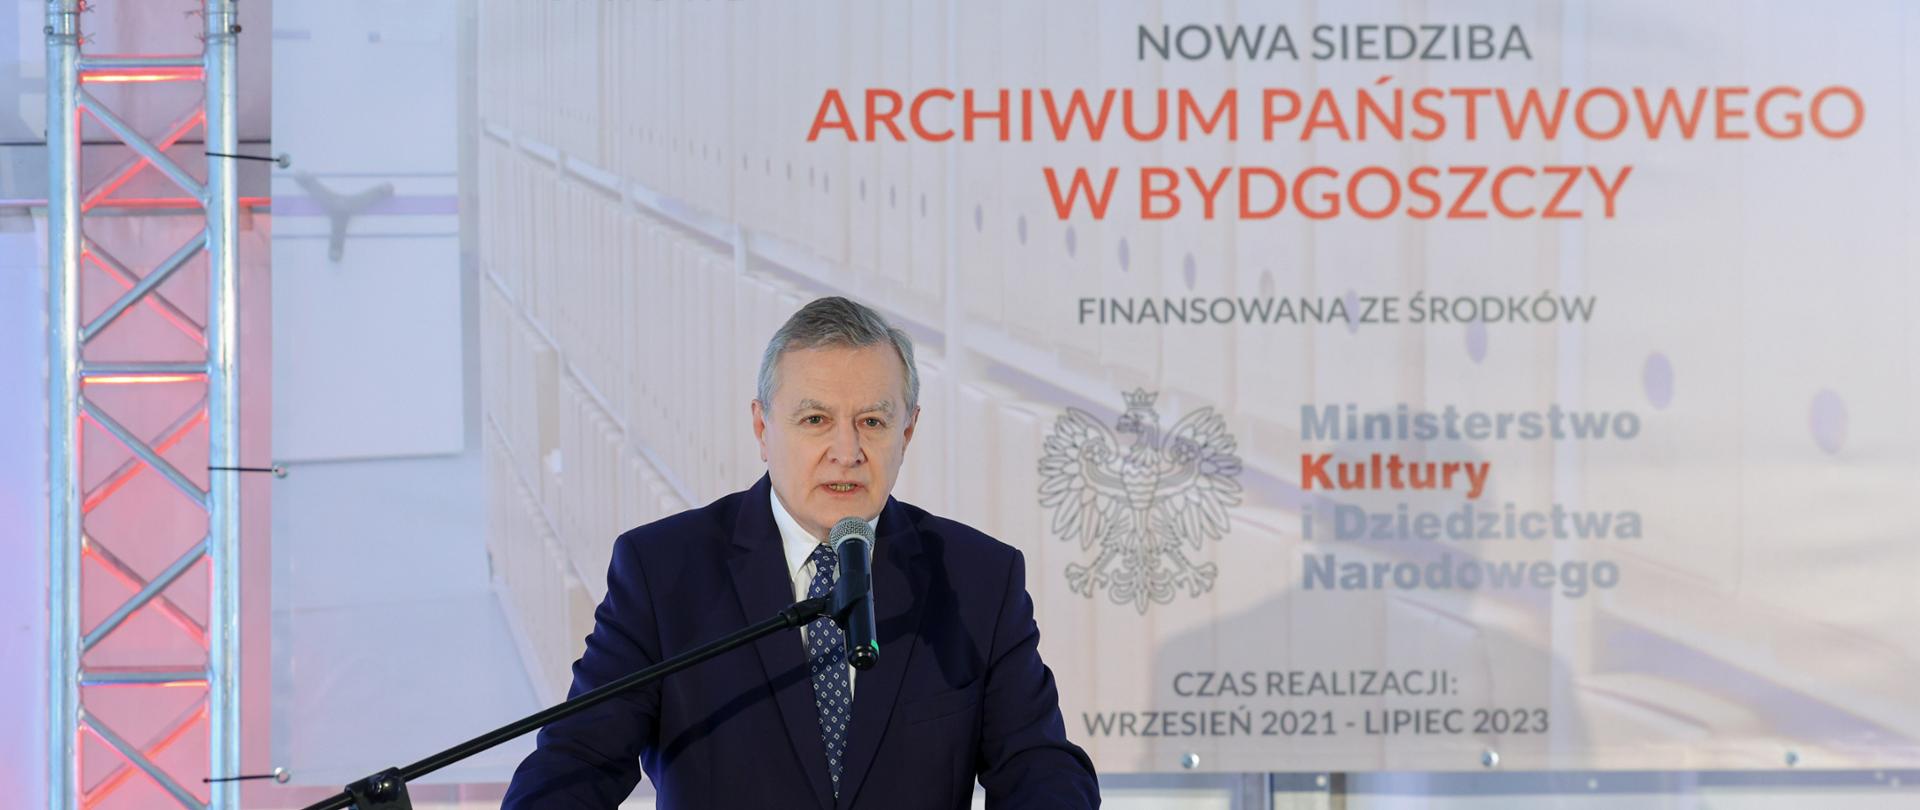 Archiwum Państwowe w Bydgoszczy będzie miało nową siedzibę, fot. Jacek Domiński/REPORTER 